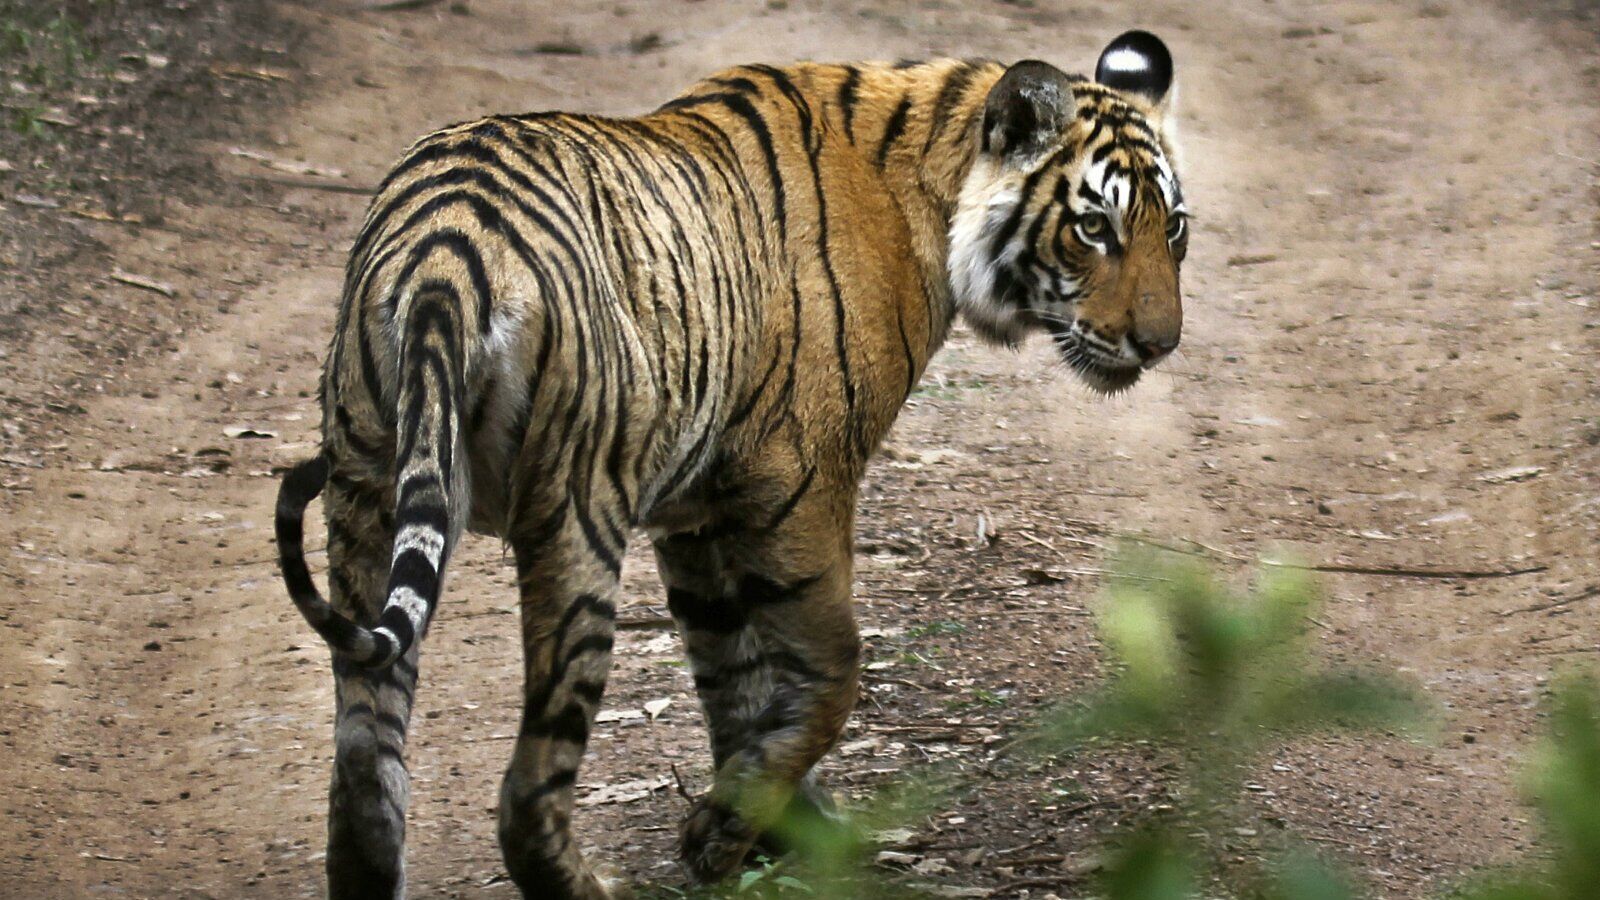 印度最受歡迎老虎死亡 消息佔據各大印媒頭版